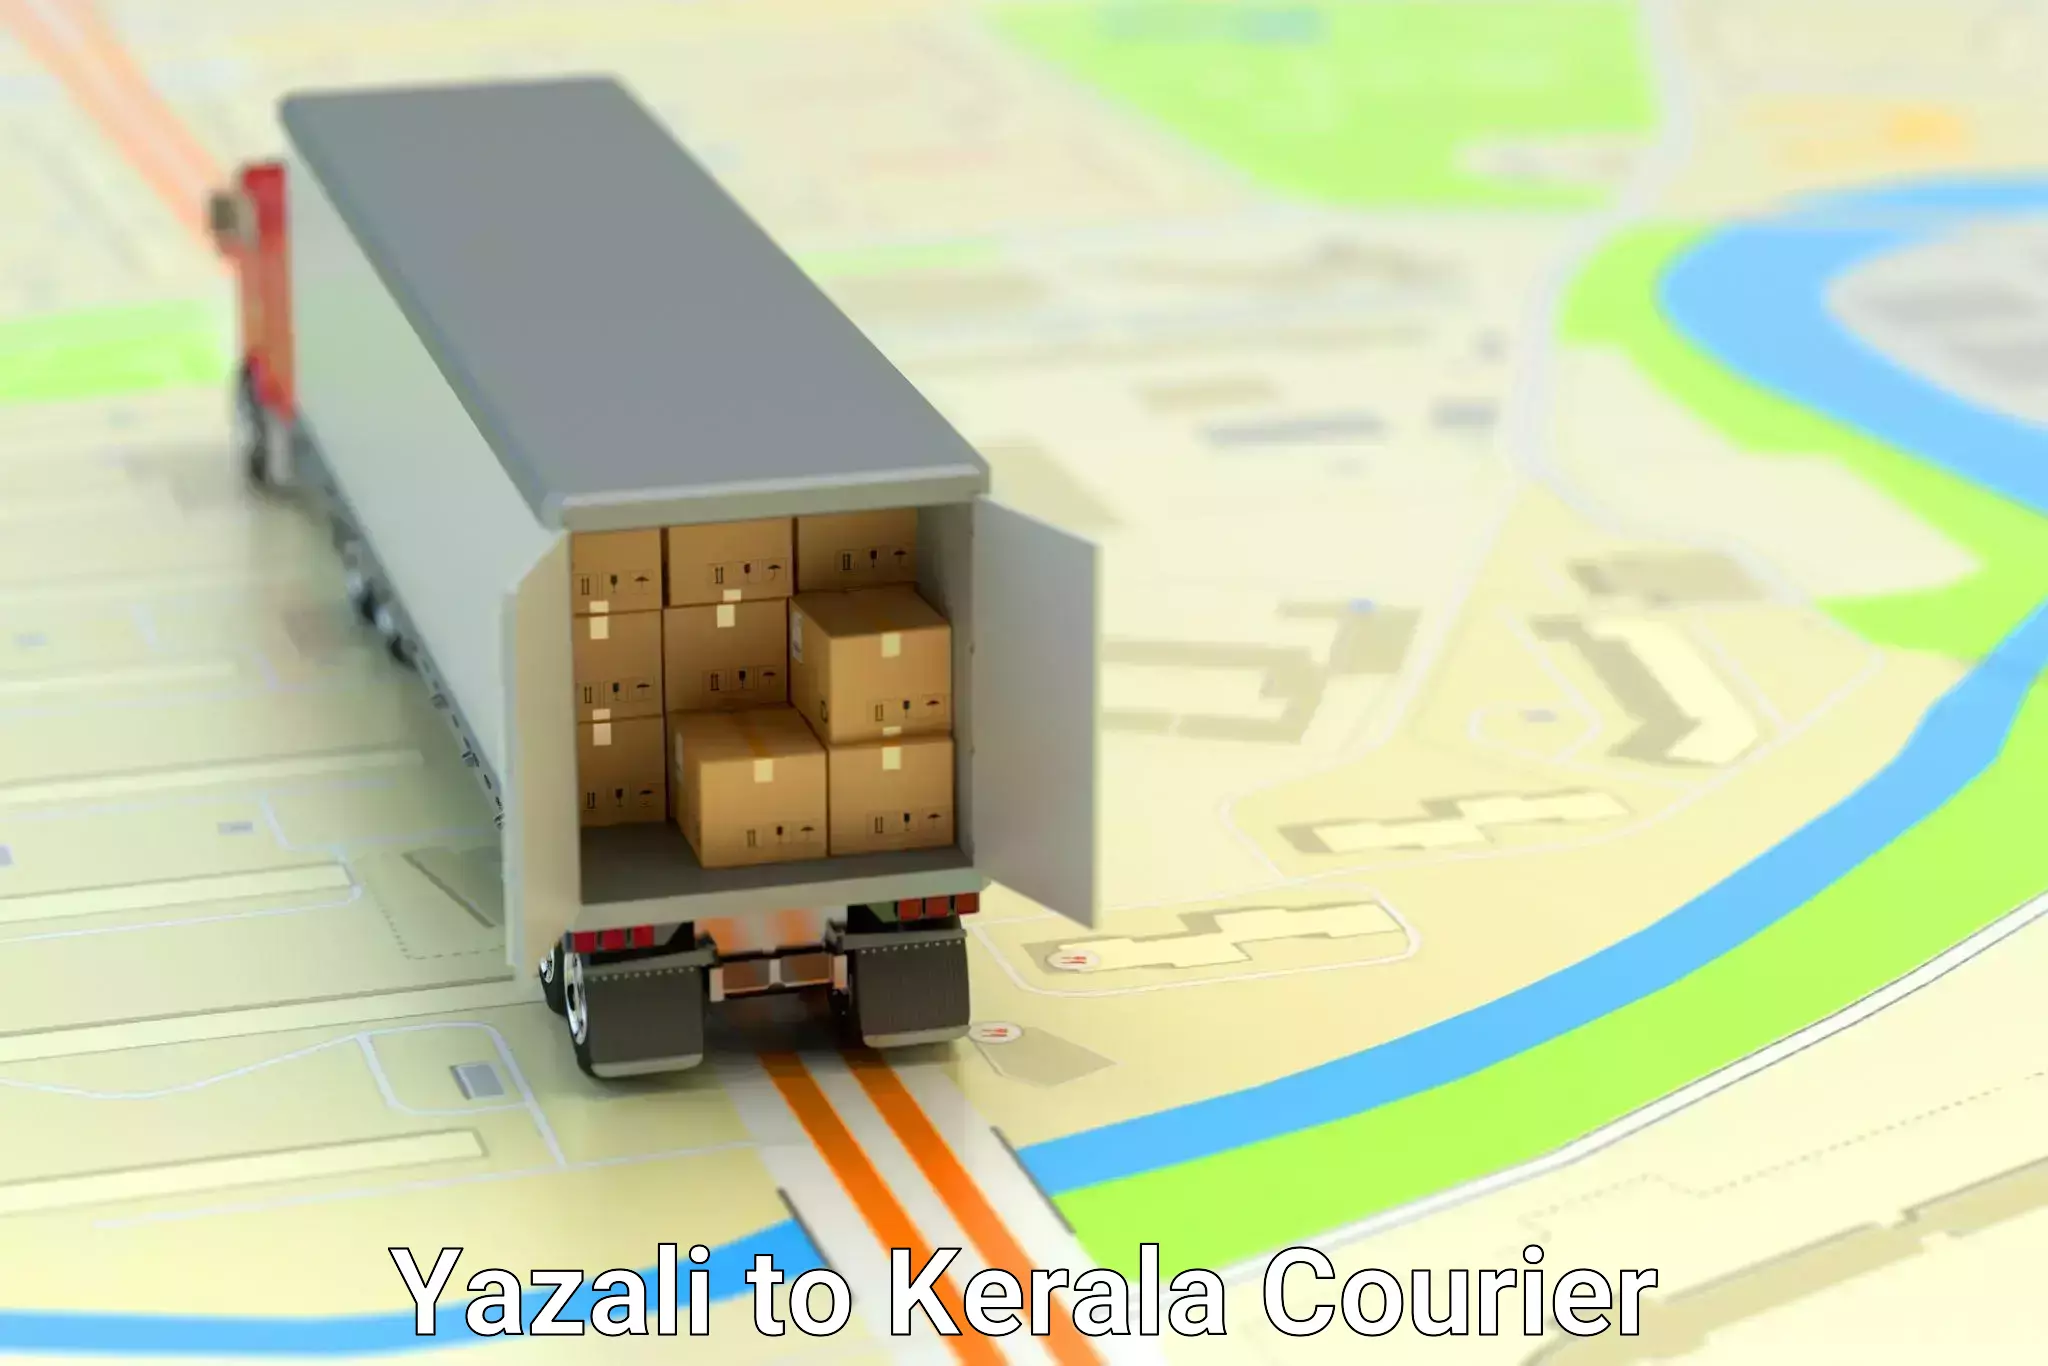 Door-to-door freight service Yazali to Allepey